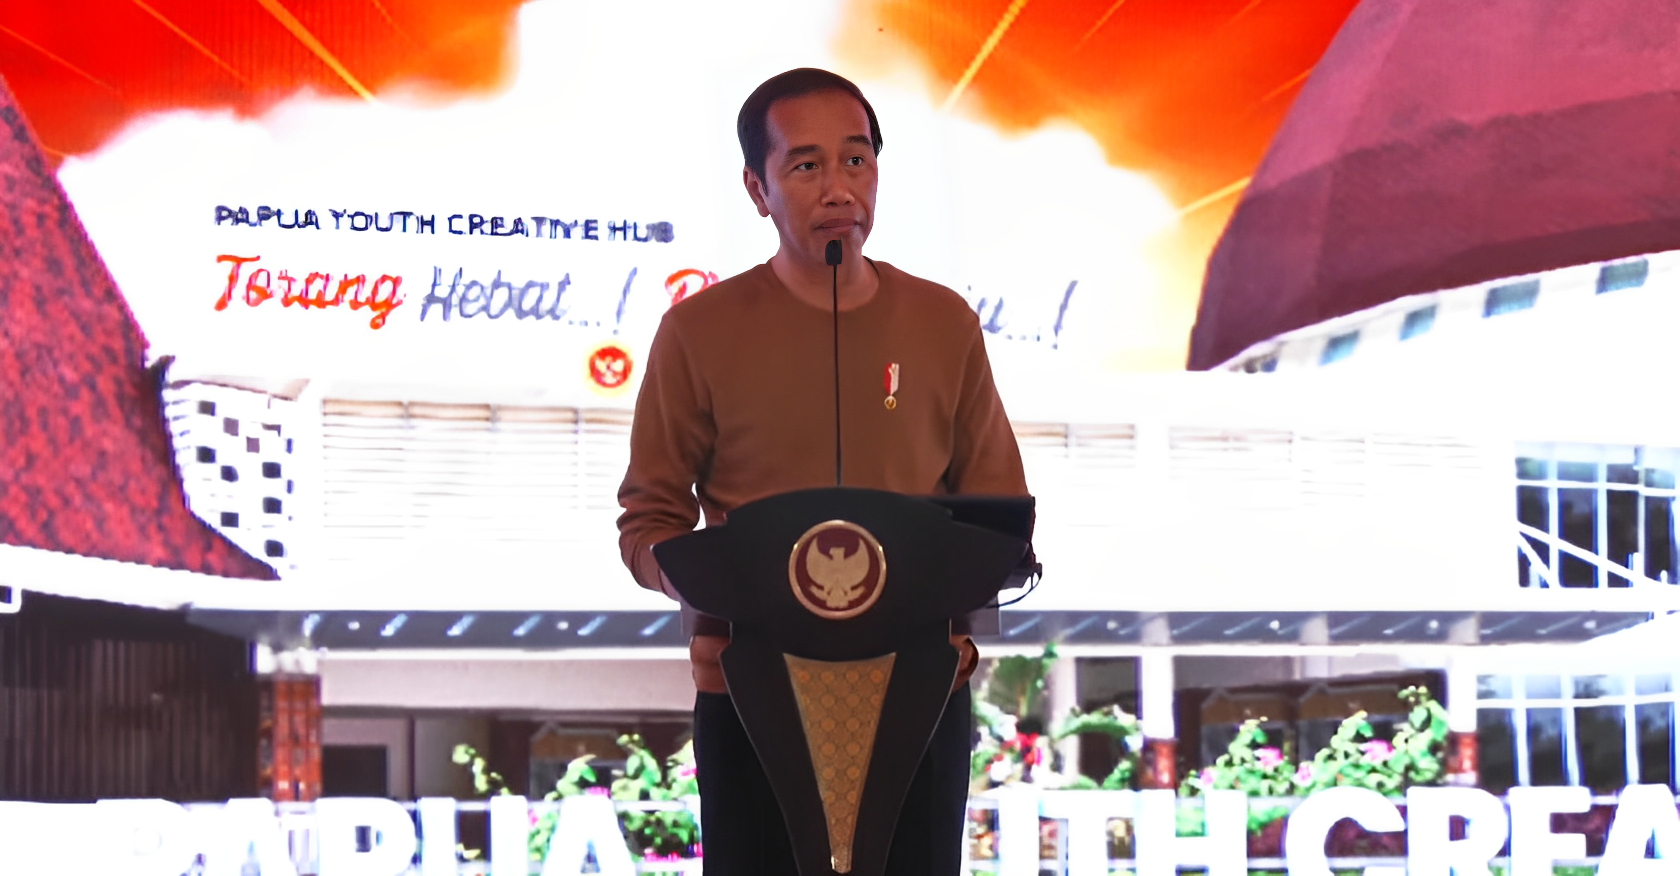 Presiden Joko Widodo Memberikan Sambutan untuk persemian Gedung Papua Youth Creative Hub di Kota Jayapura